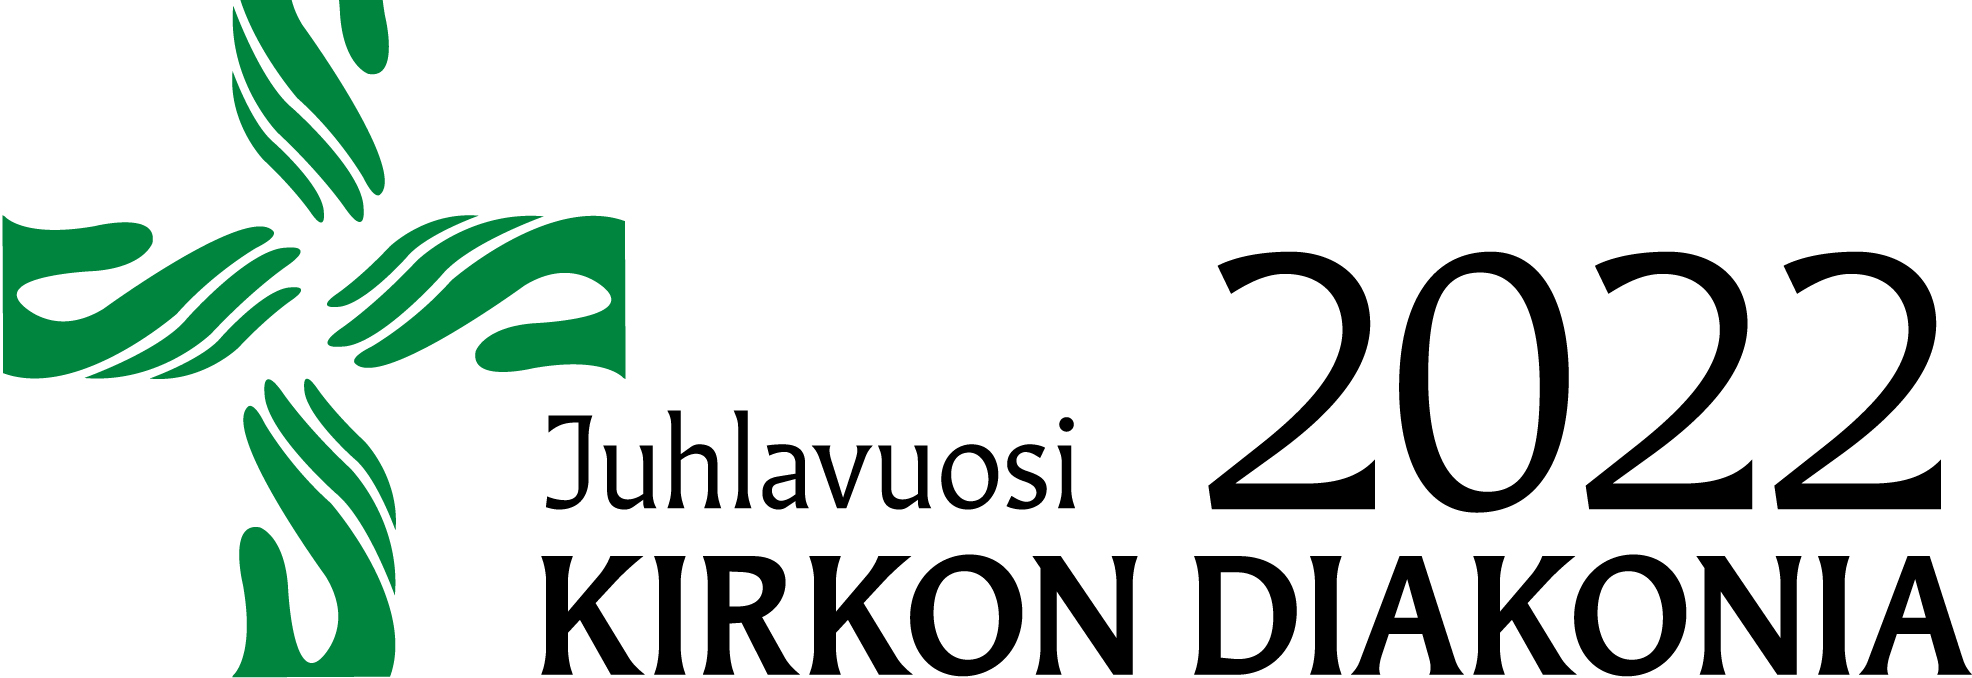 Diakonian juhlavuosilogo, jossa teksti Juhlavuosi 2022, Kirkon diakonia.